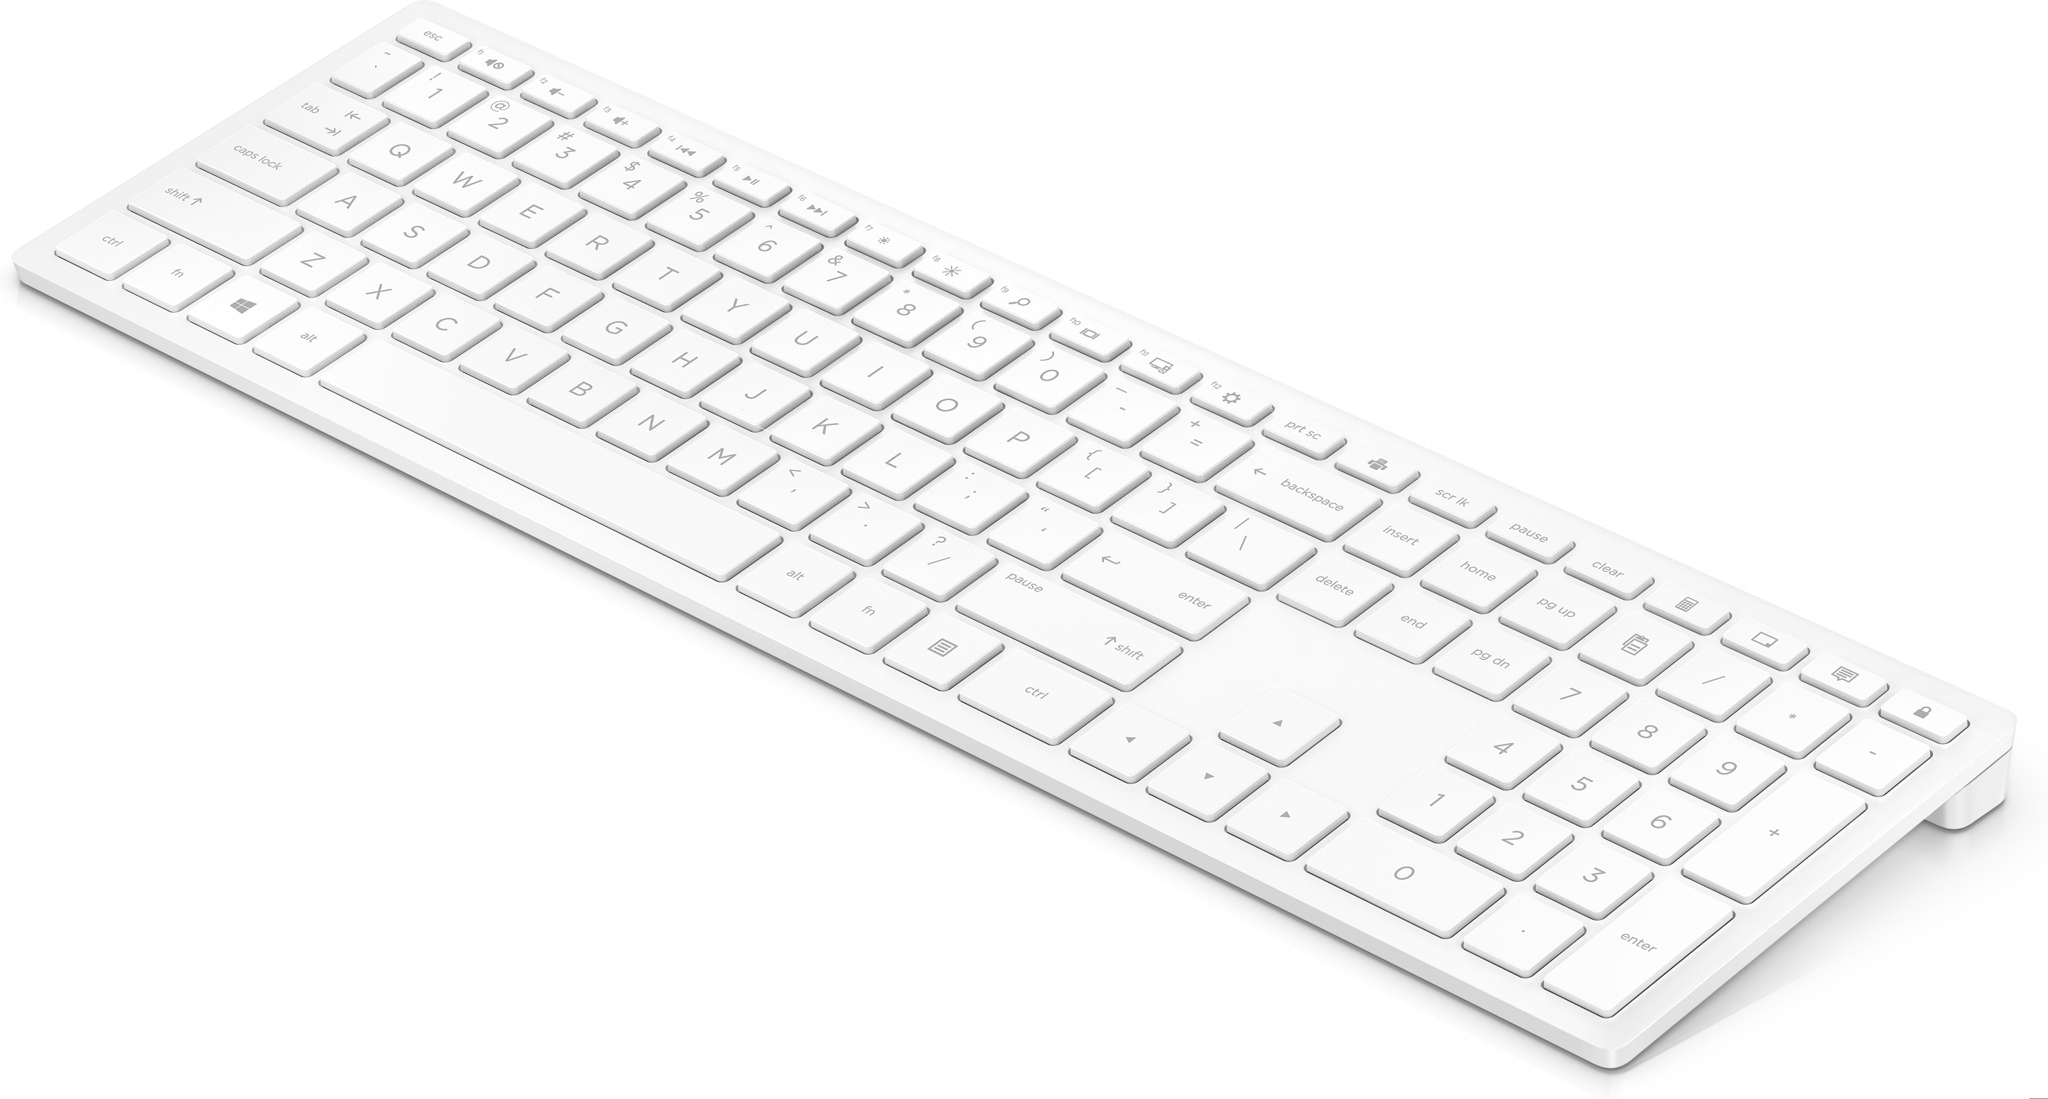 Bild von HP Pavillon Kabellose Tastatur 600, Standard, Kabellos, RF Wireless, Mechanischer Switch, Weiß